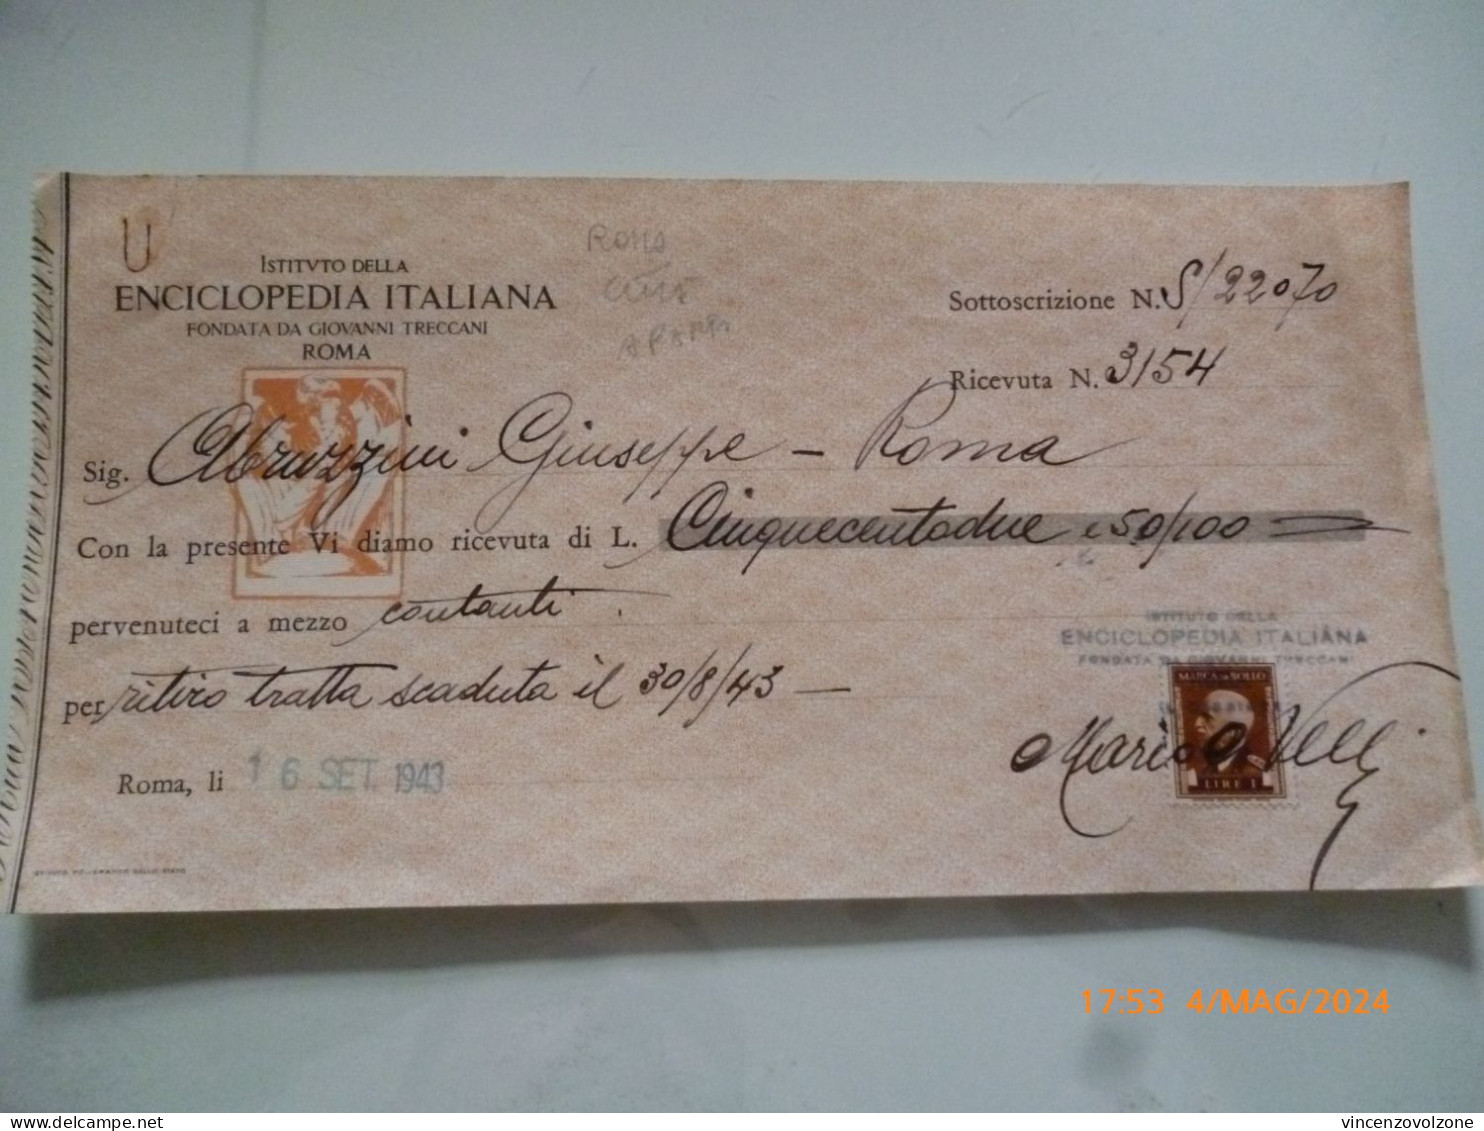 Ricevuta "ENCICLOPEDIA ITALIANA TRECCANI ROMA" 1943 - Italy